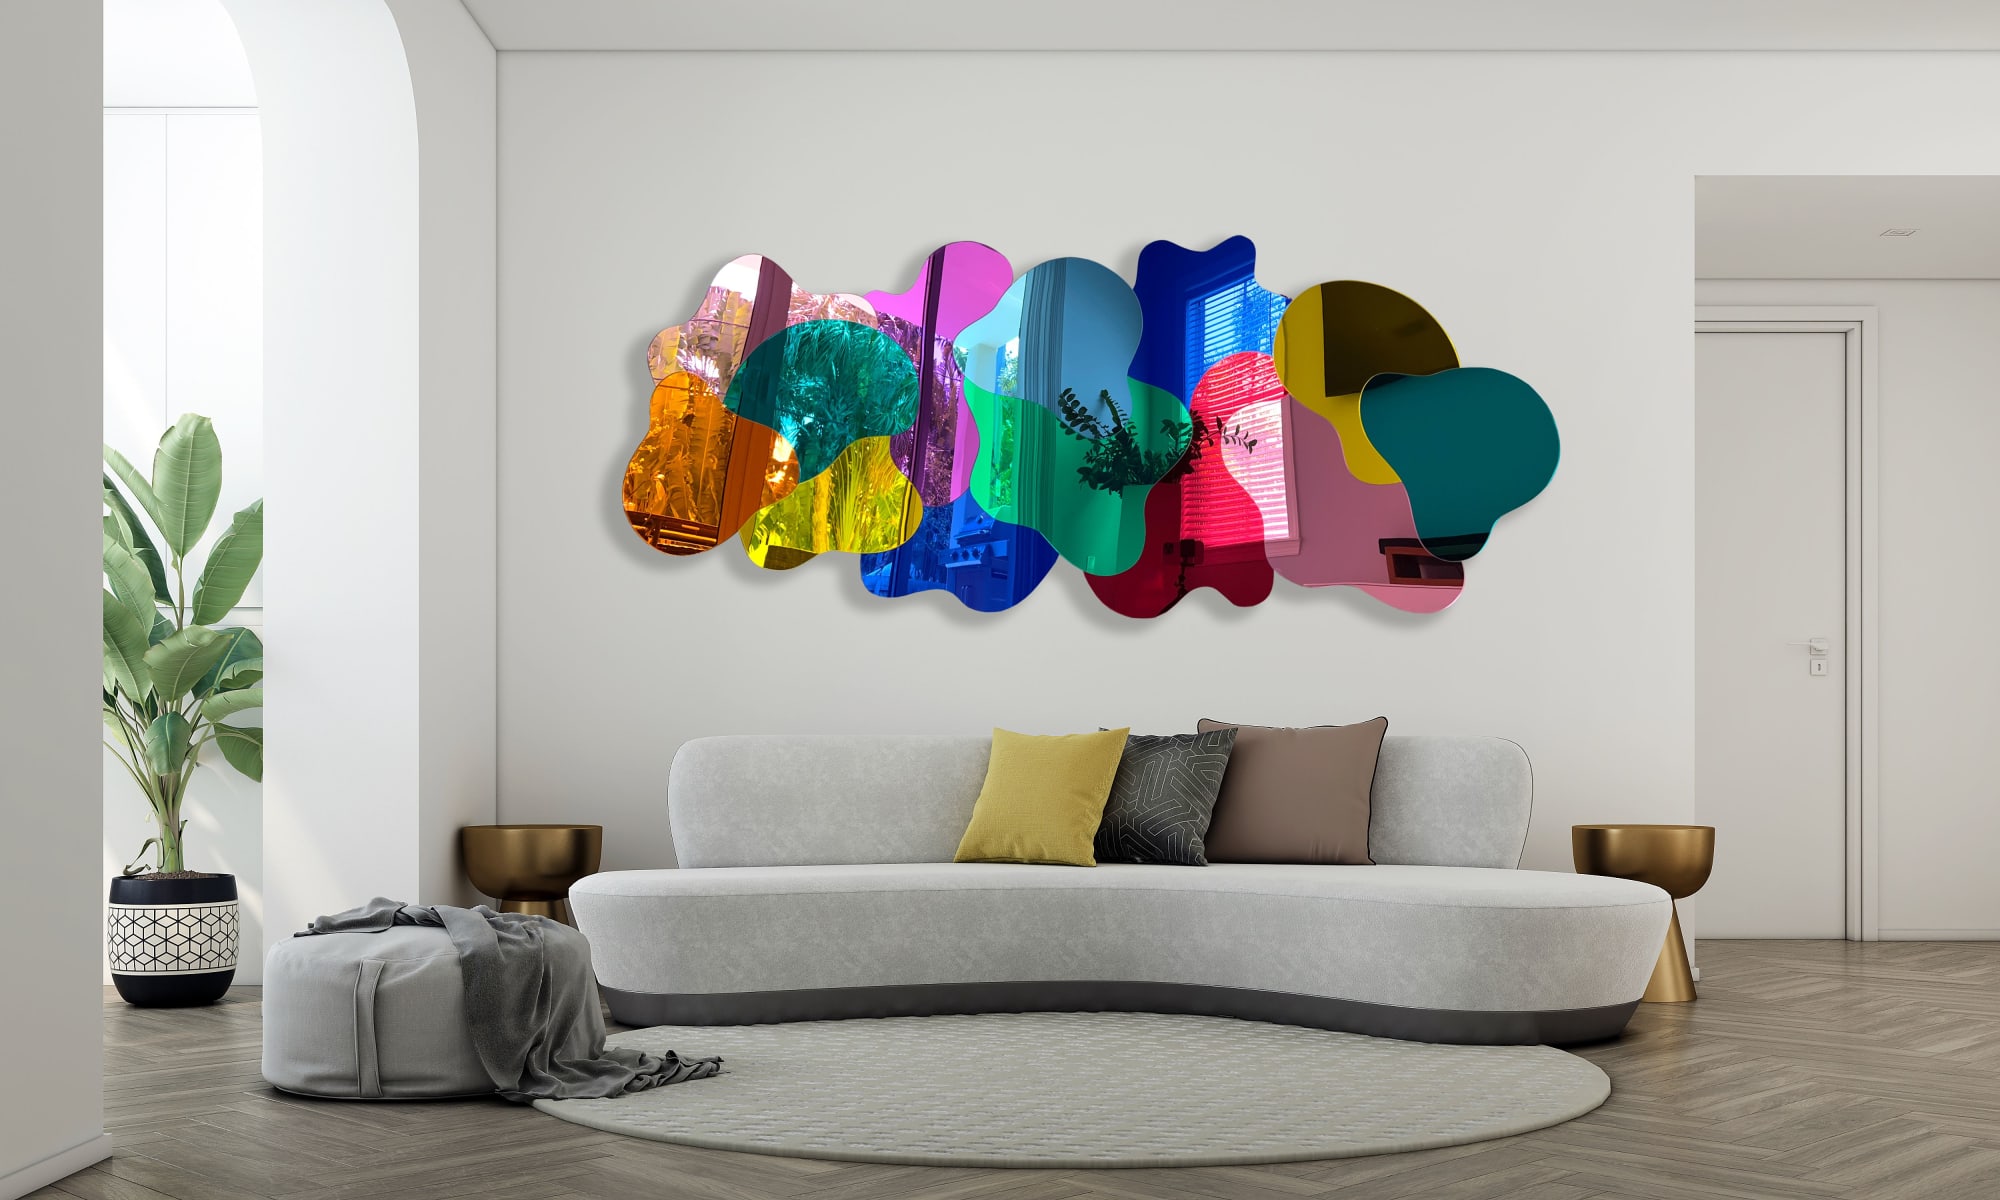 Transparent Rainbow 3D Wall Sculpture Parametric Art by uniQstiQ